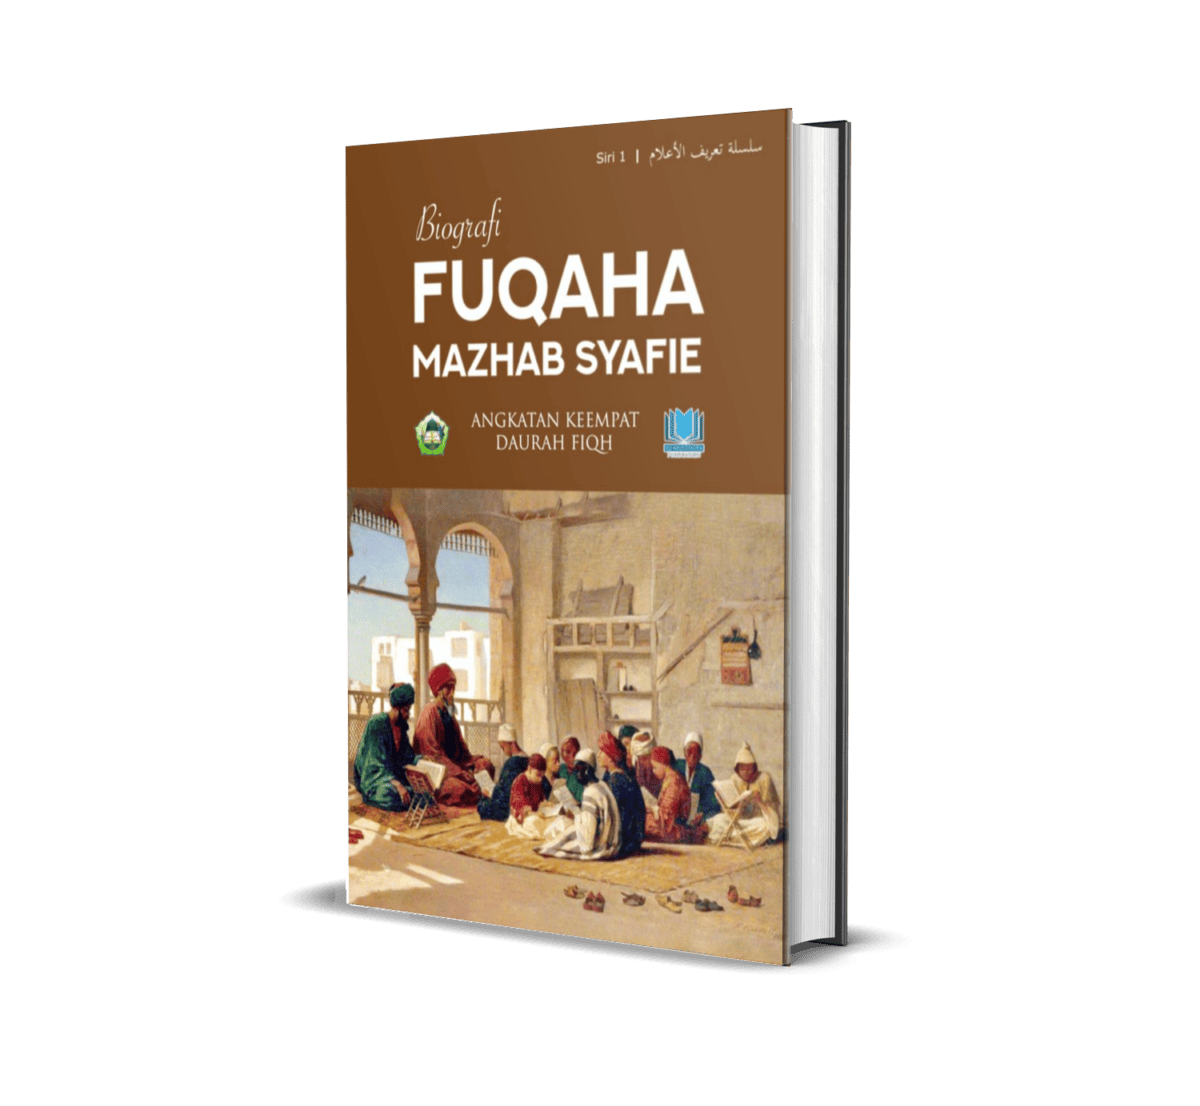 Siri 1: Biografi Fuqaha Mazhab Syafie